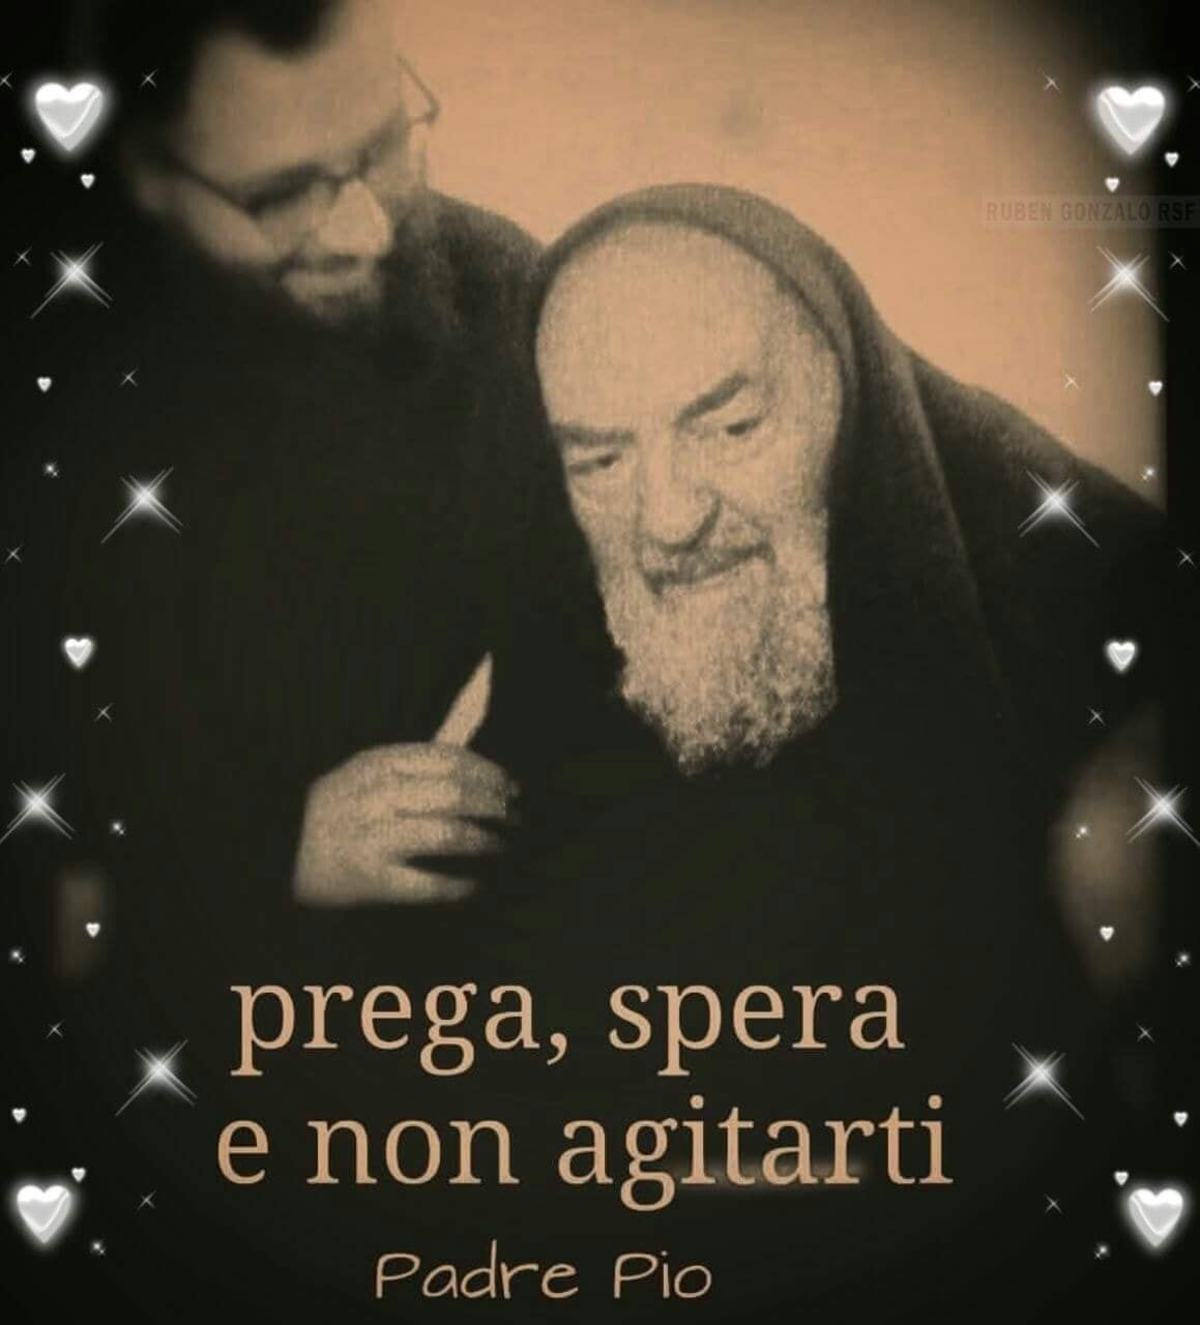 Prega spera e non agitarti Padre Pio